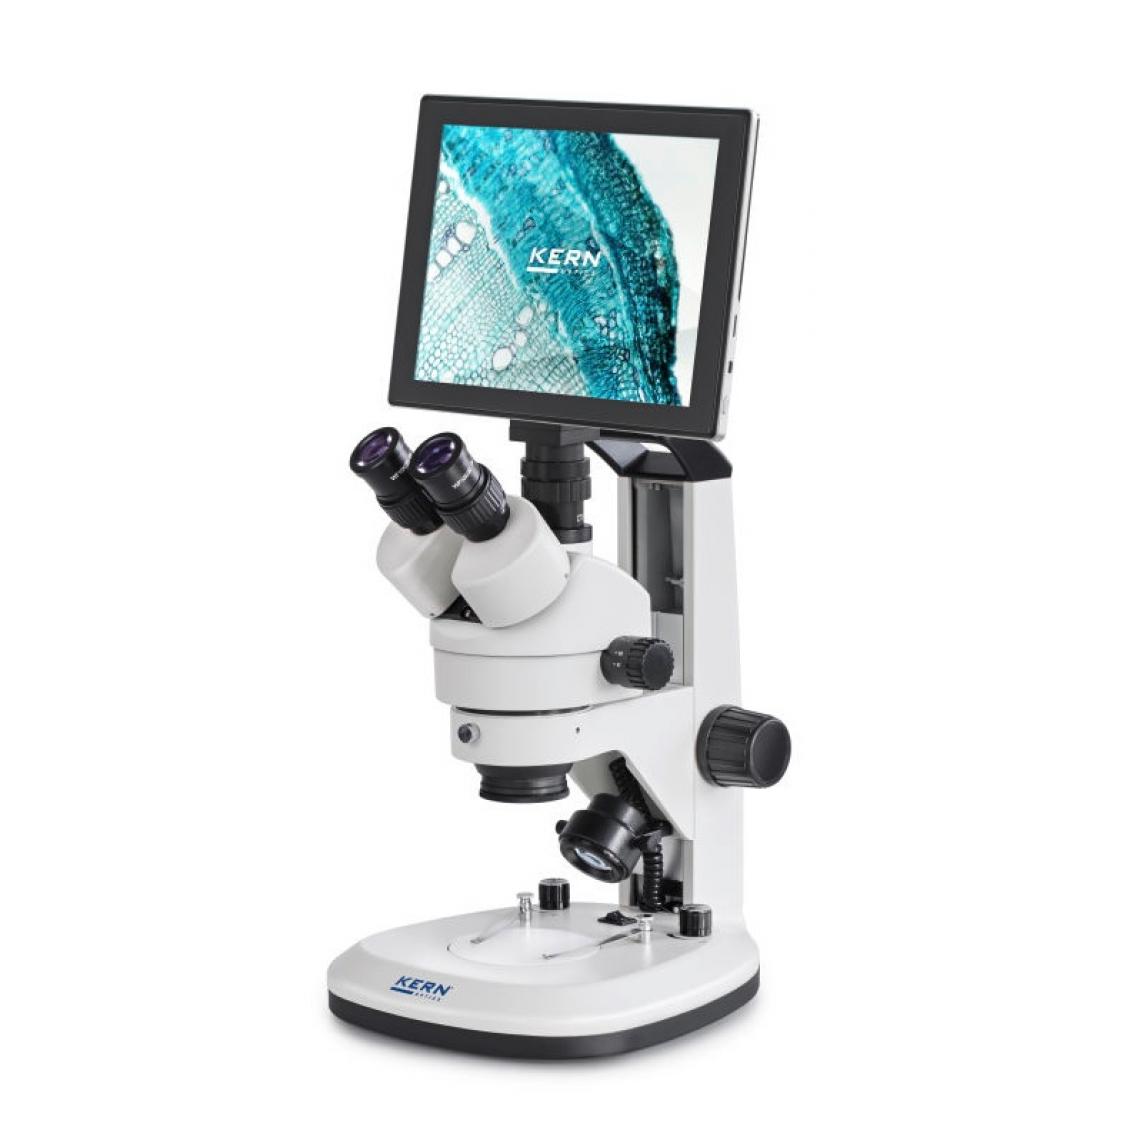 Kern sohn - Kern - Set de microscope numérique OZL-S avec tablette ODC 241 5MP et WLAN, USB 2.0, HDMI, SD - OZL 468T241 - Appareils de mesure